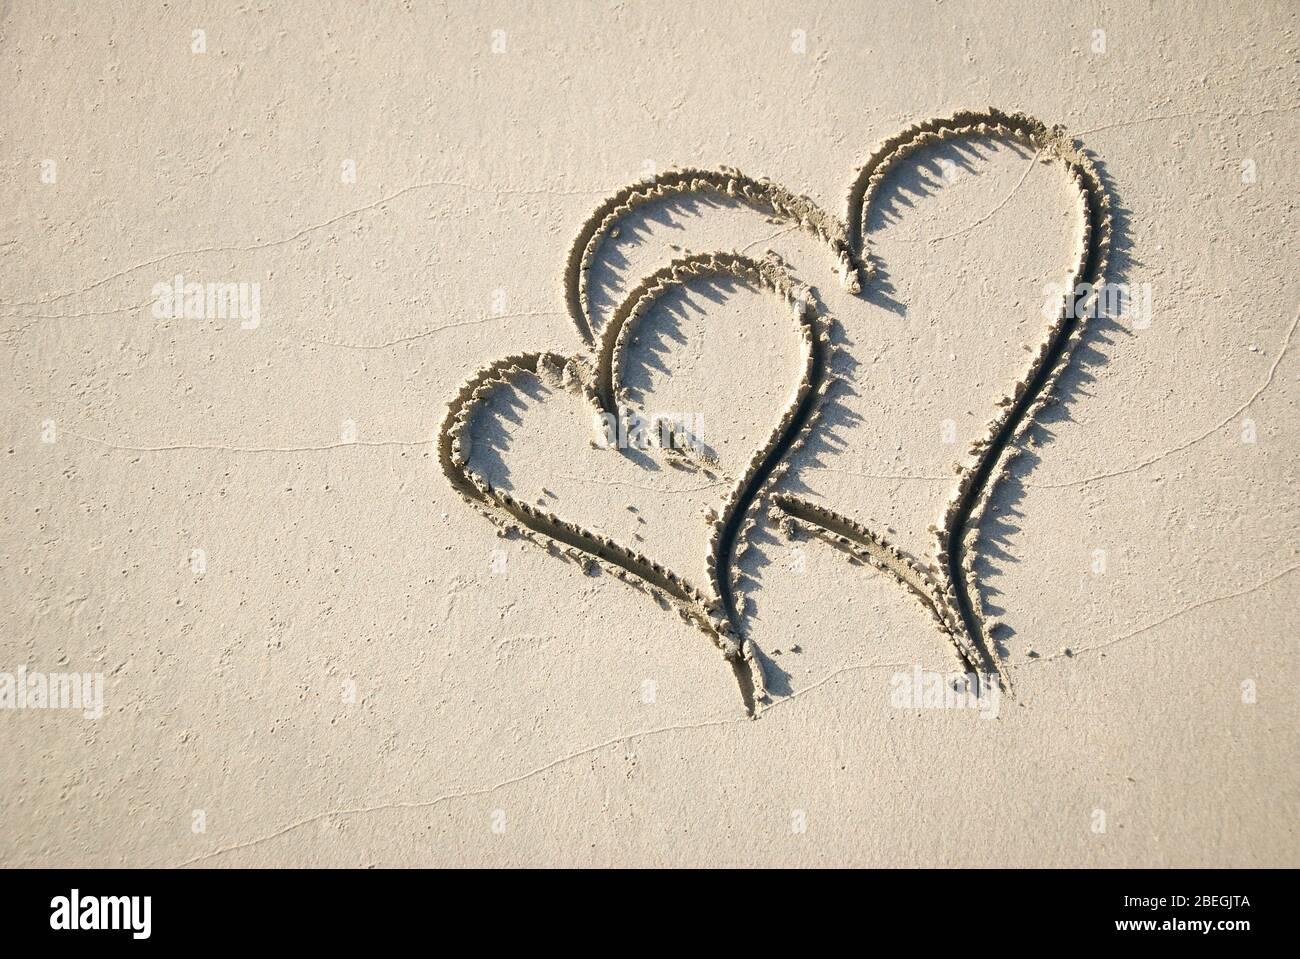 Coppia di cuori scritti a mano disegnati in un'interbloccaggio in sabbia liscia su una spiaggia soleggiata Foto Stock